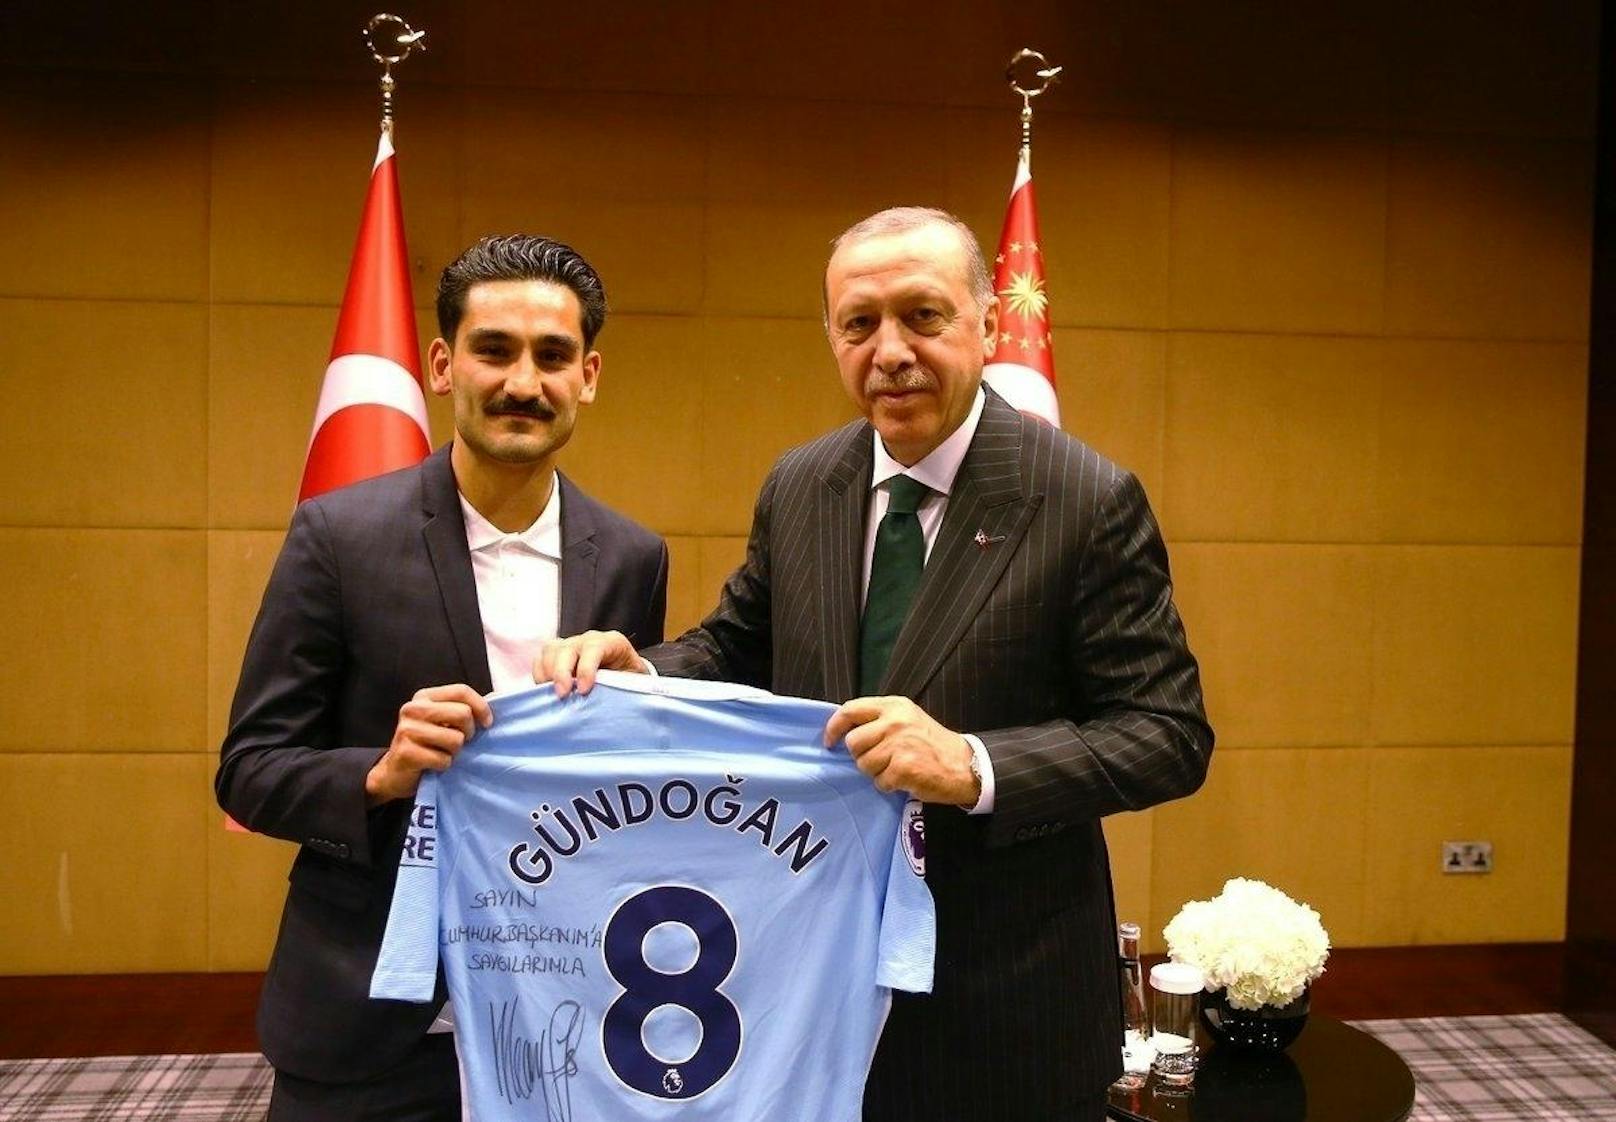 Auch Gündogan überreicht dem Staatsoberhaupt ein Trikot seines Clubs Manchester City, worauf er "Mit Respekt für meinen Präsidenten" geschrieben hat.